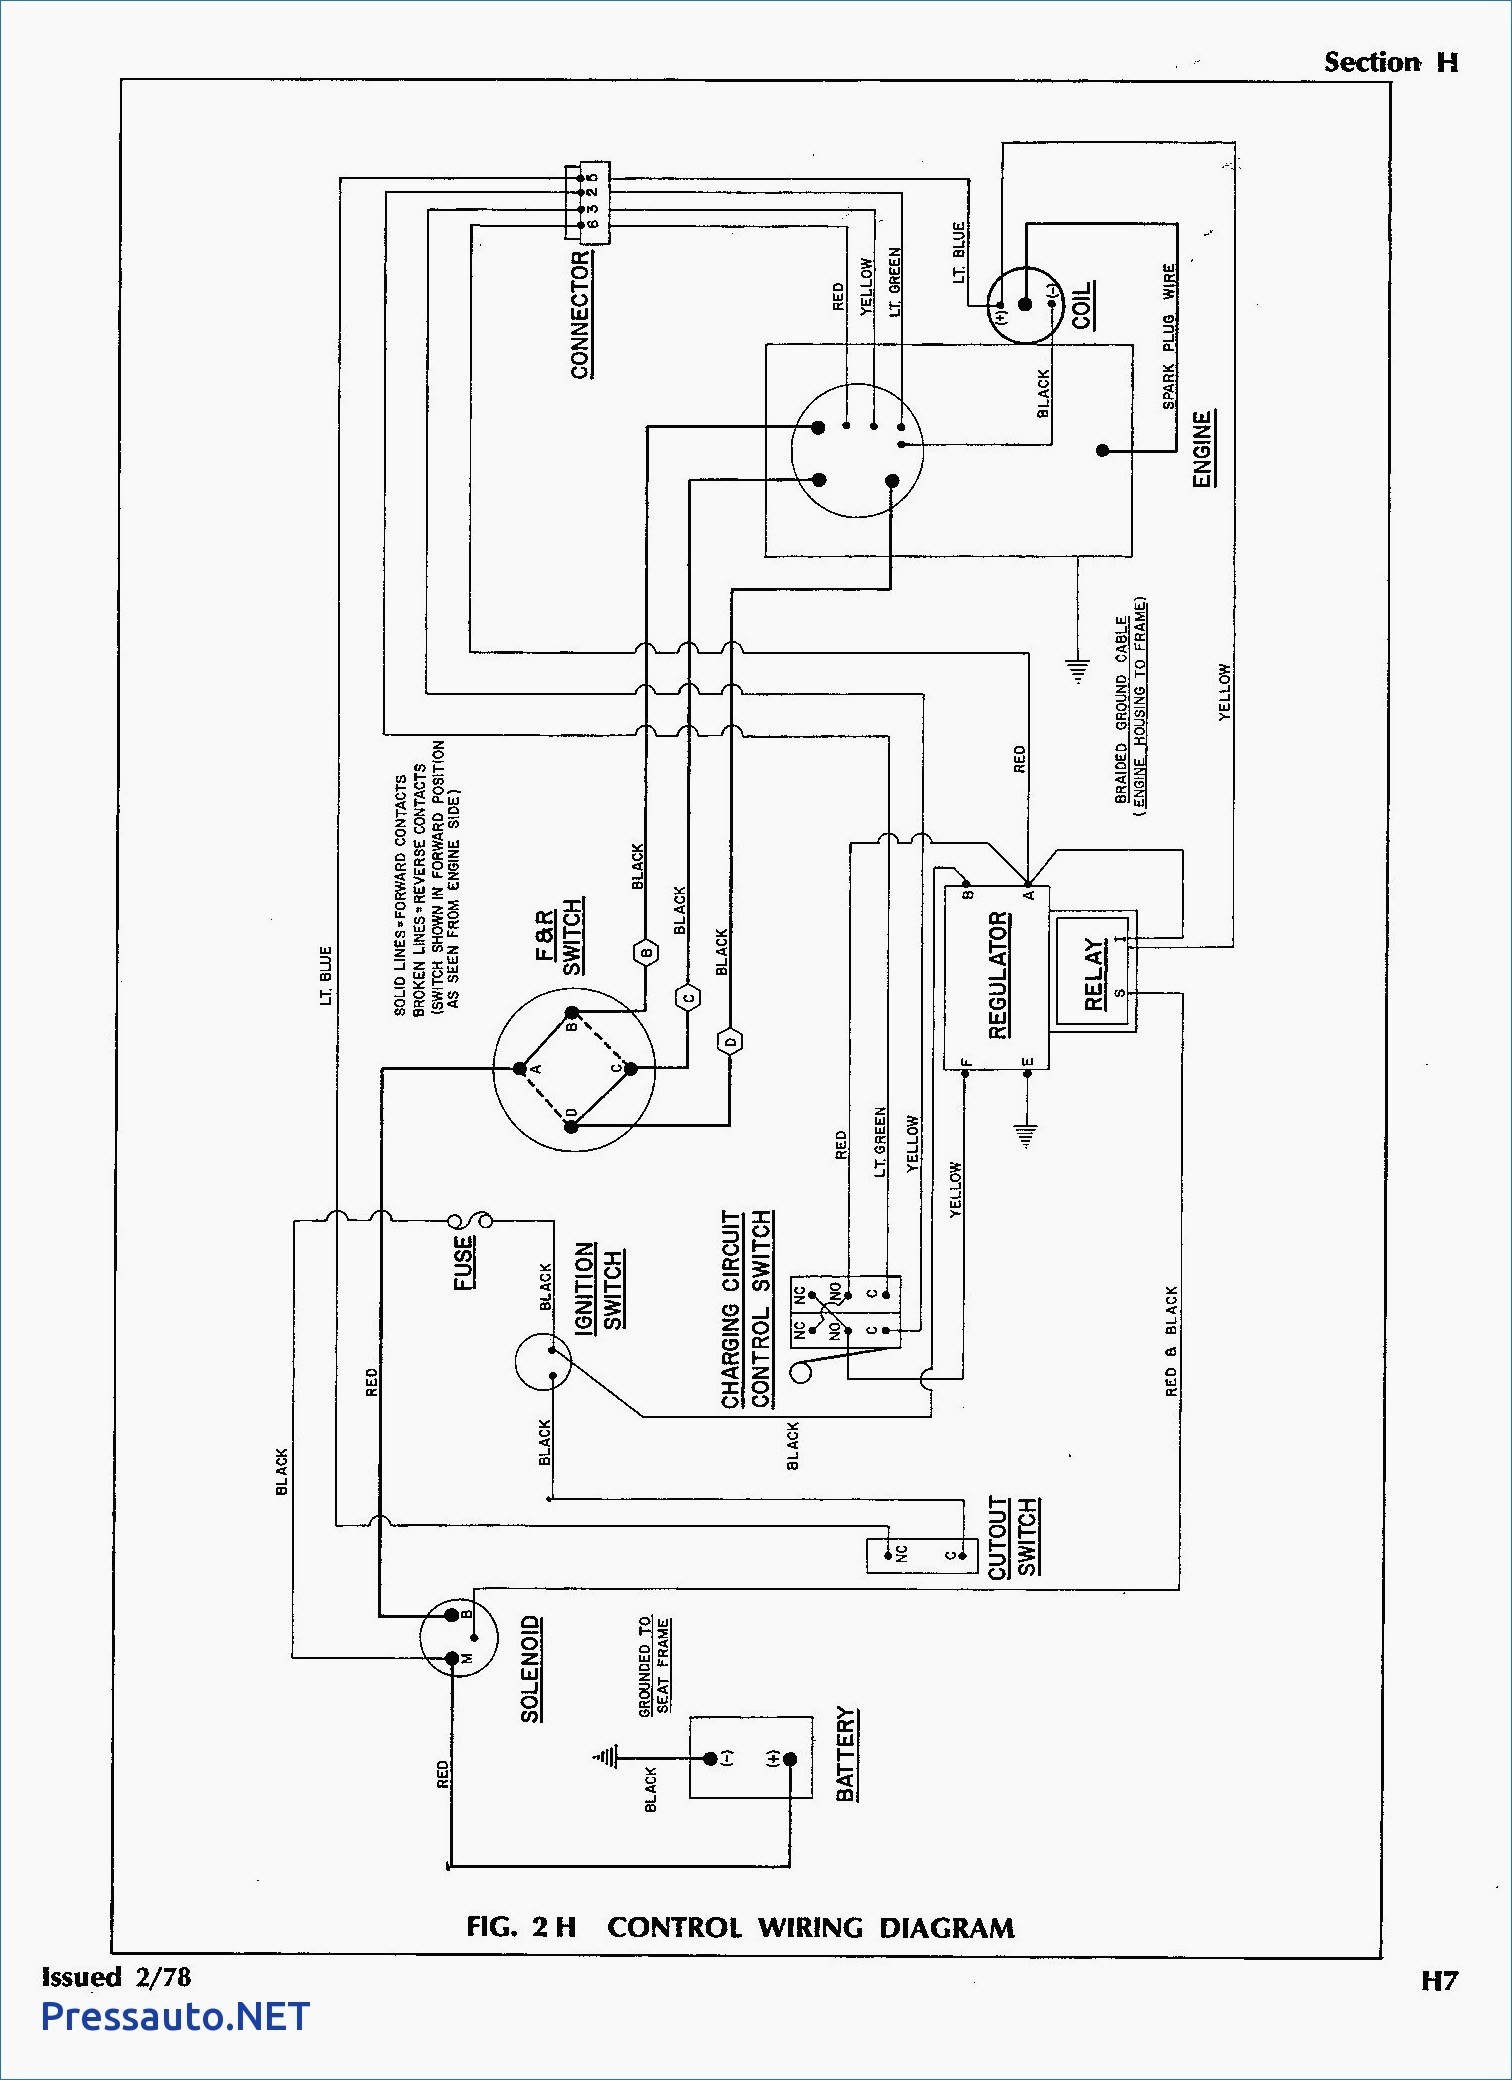 2003 Ezgo Gas Wiring Diagram Wiring Diagram Sample 2003 Ezgo Wiring Diagram 2003 Ezgo Wiring Diagram